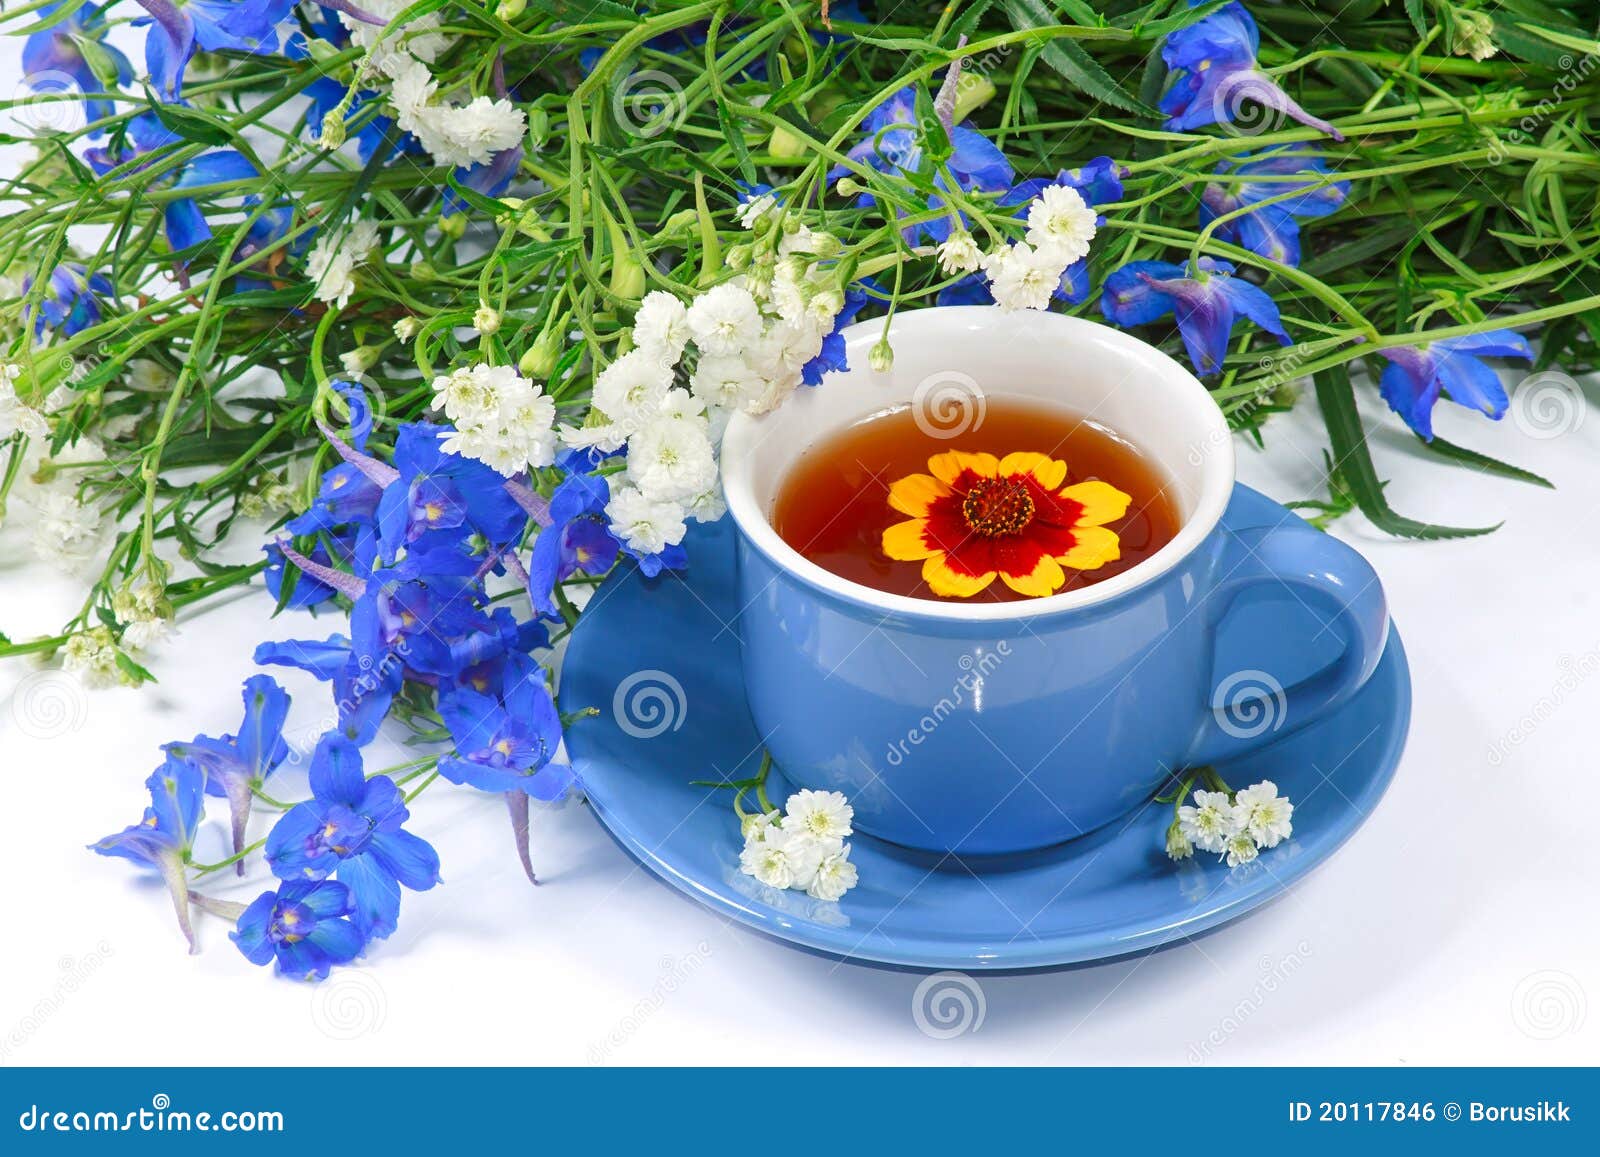 Resultado de imagem para chá de flores